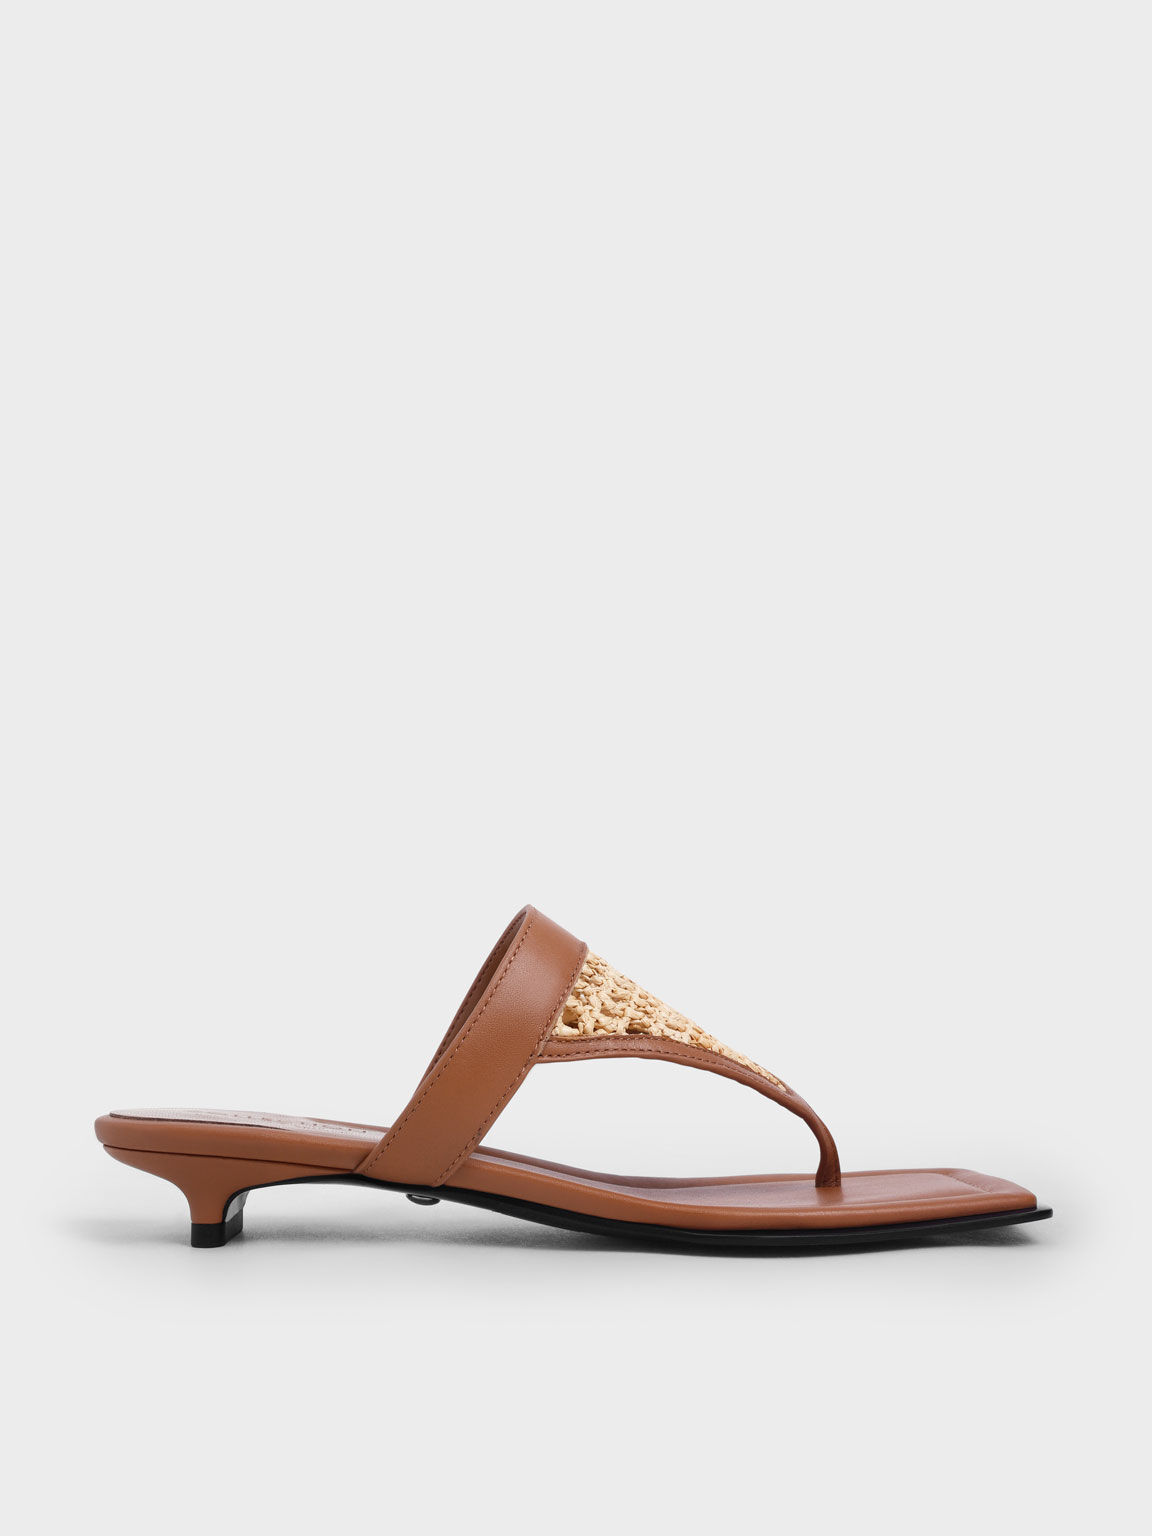 Sandal Thong Leather & Raffia Kitten Heel, Brown, hi-res